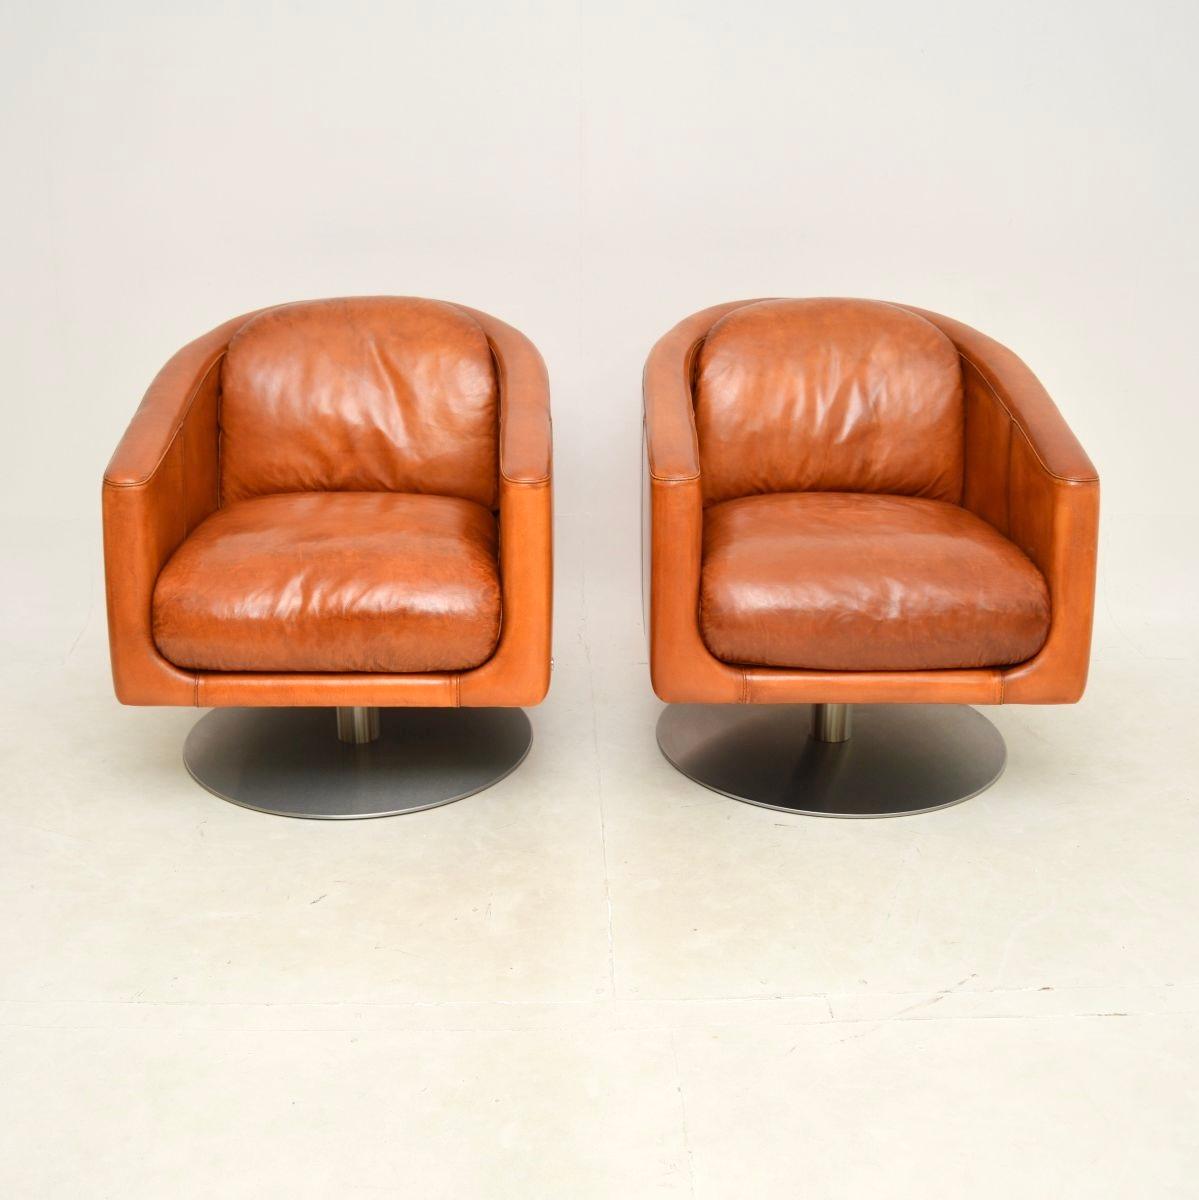 Une paire élégante et extrêmement confortable de fauteuils pivotants en cuir italien par Natuzzi, datant du début du vingt-et-unième siècle.

Ils sont d'une qualité absolument incroyable, extrêmement bien construits et lourds, reposant sur des bases